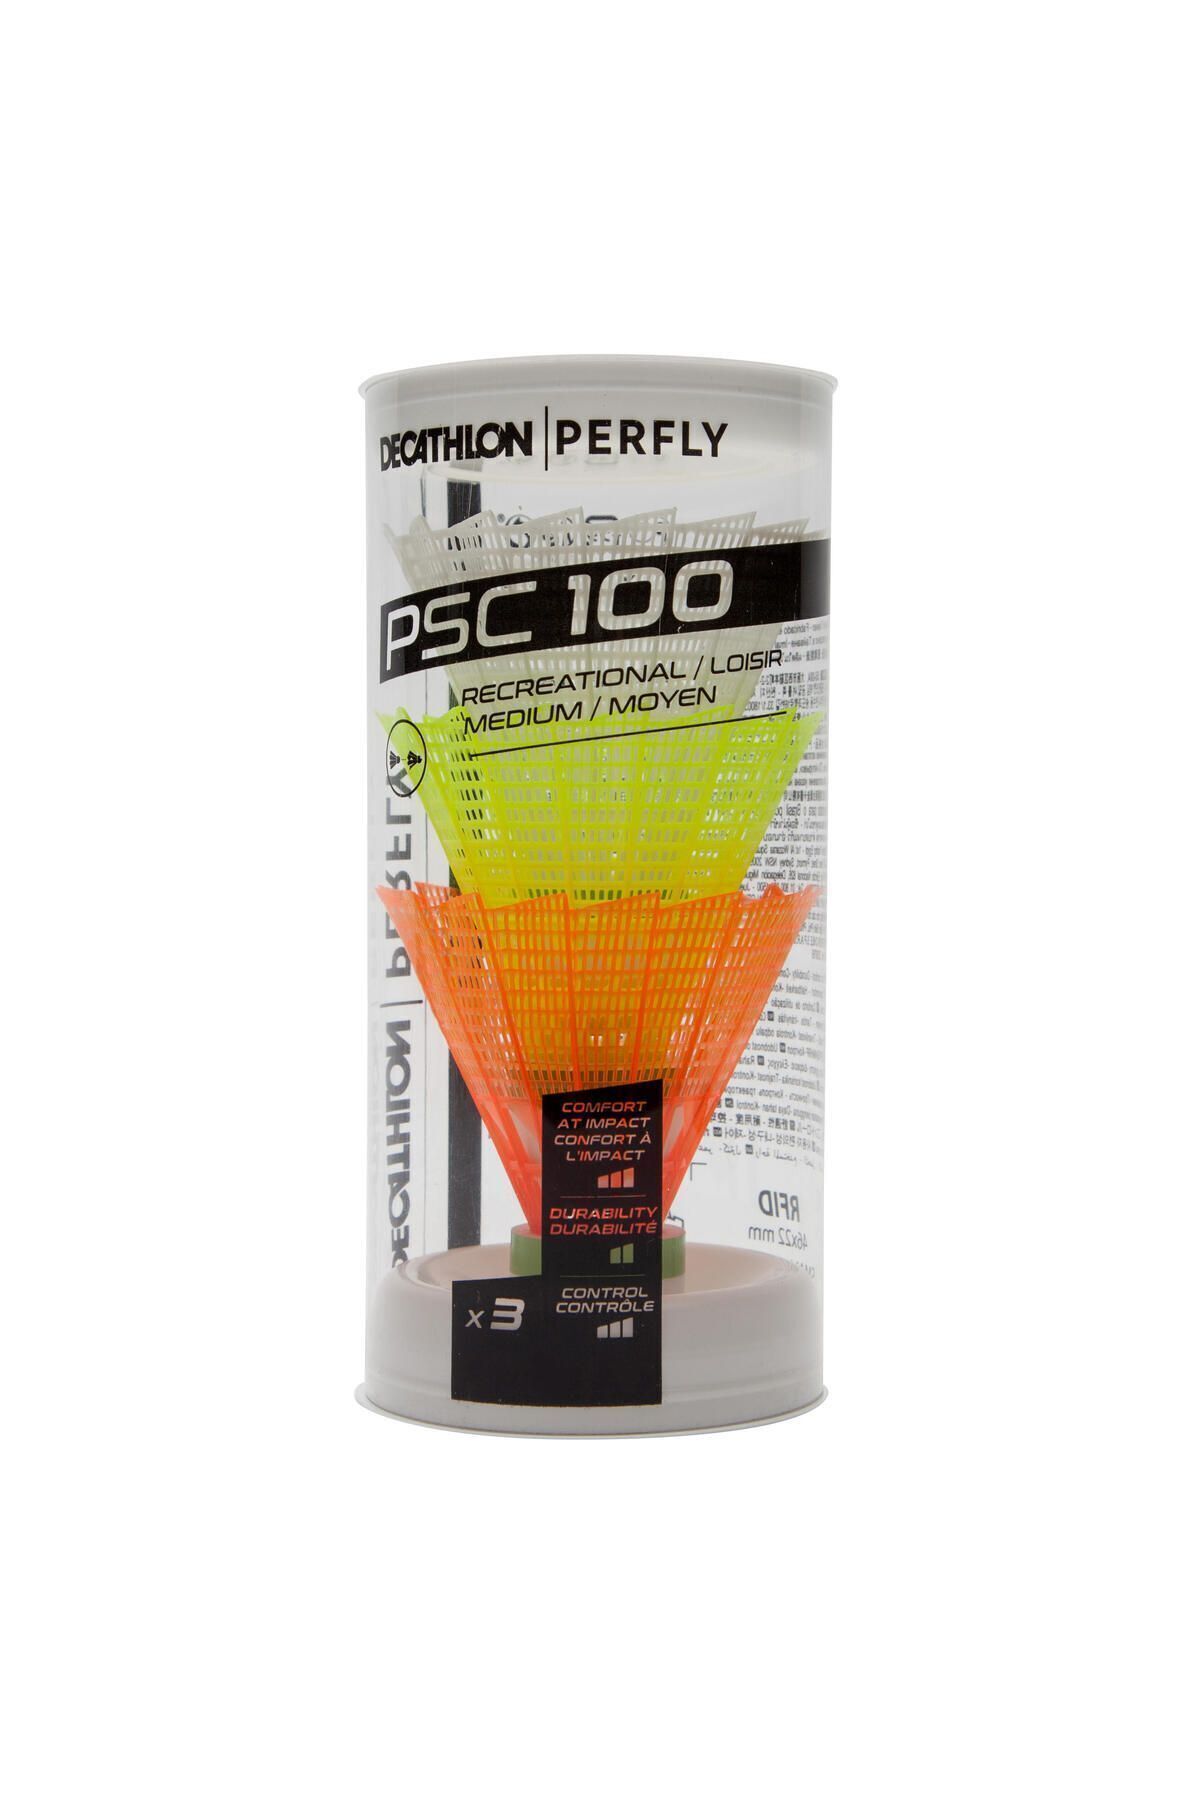 Decathlon Perfly Badminton Topu - Orta Boy - 3'lü Paket - Psc 100 326236